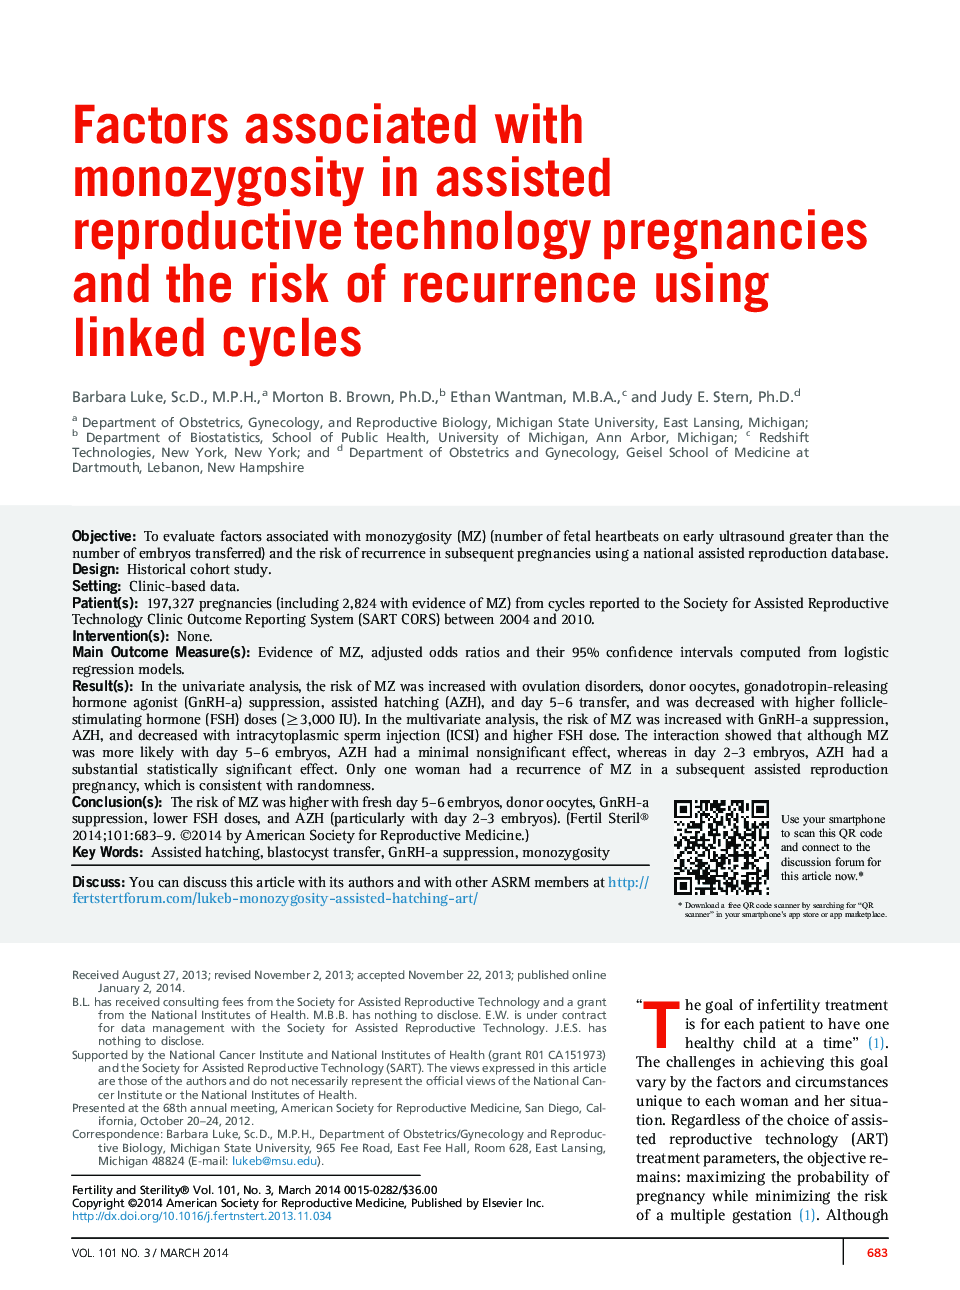 عوامل مرتبط با تک زوجی در حاملگی فن آوری های باروری کمک و خطر عود با استفاده از چرخه های مرتبط 